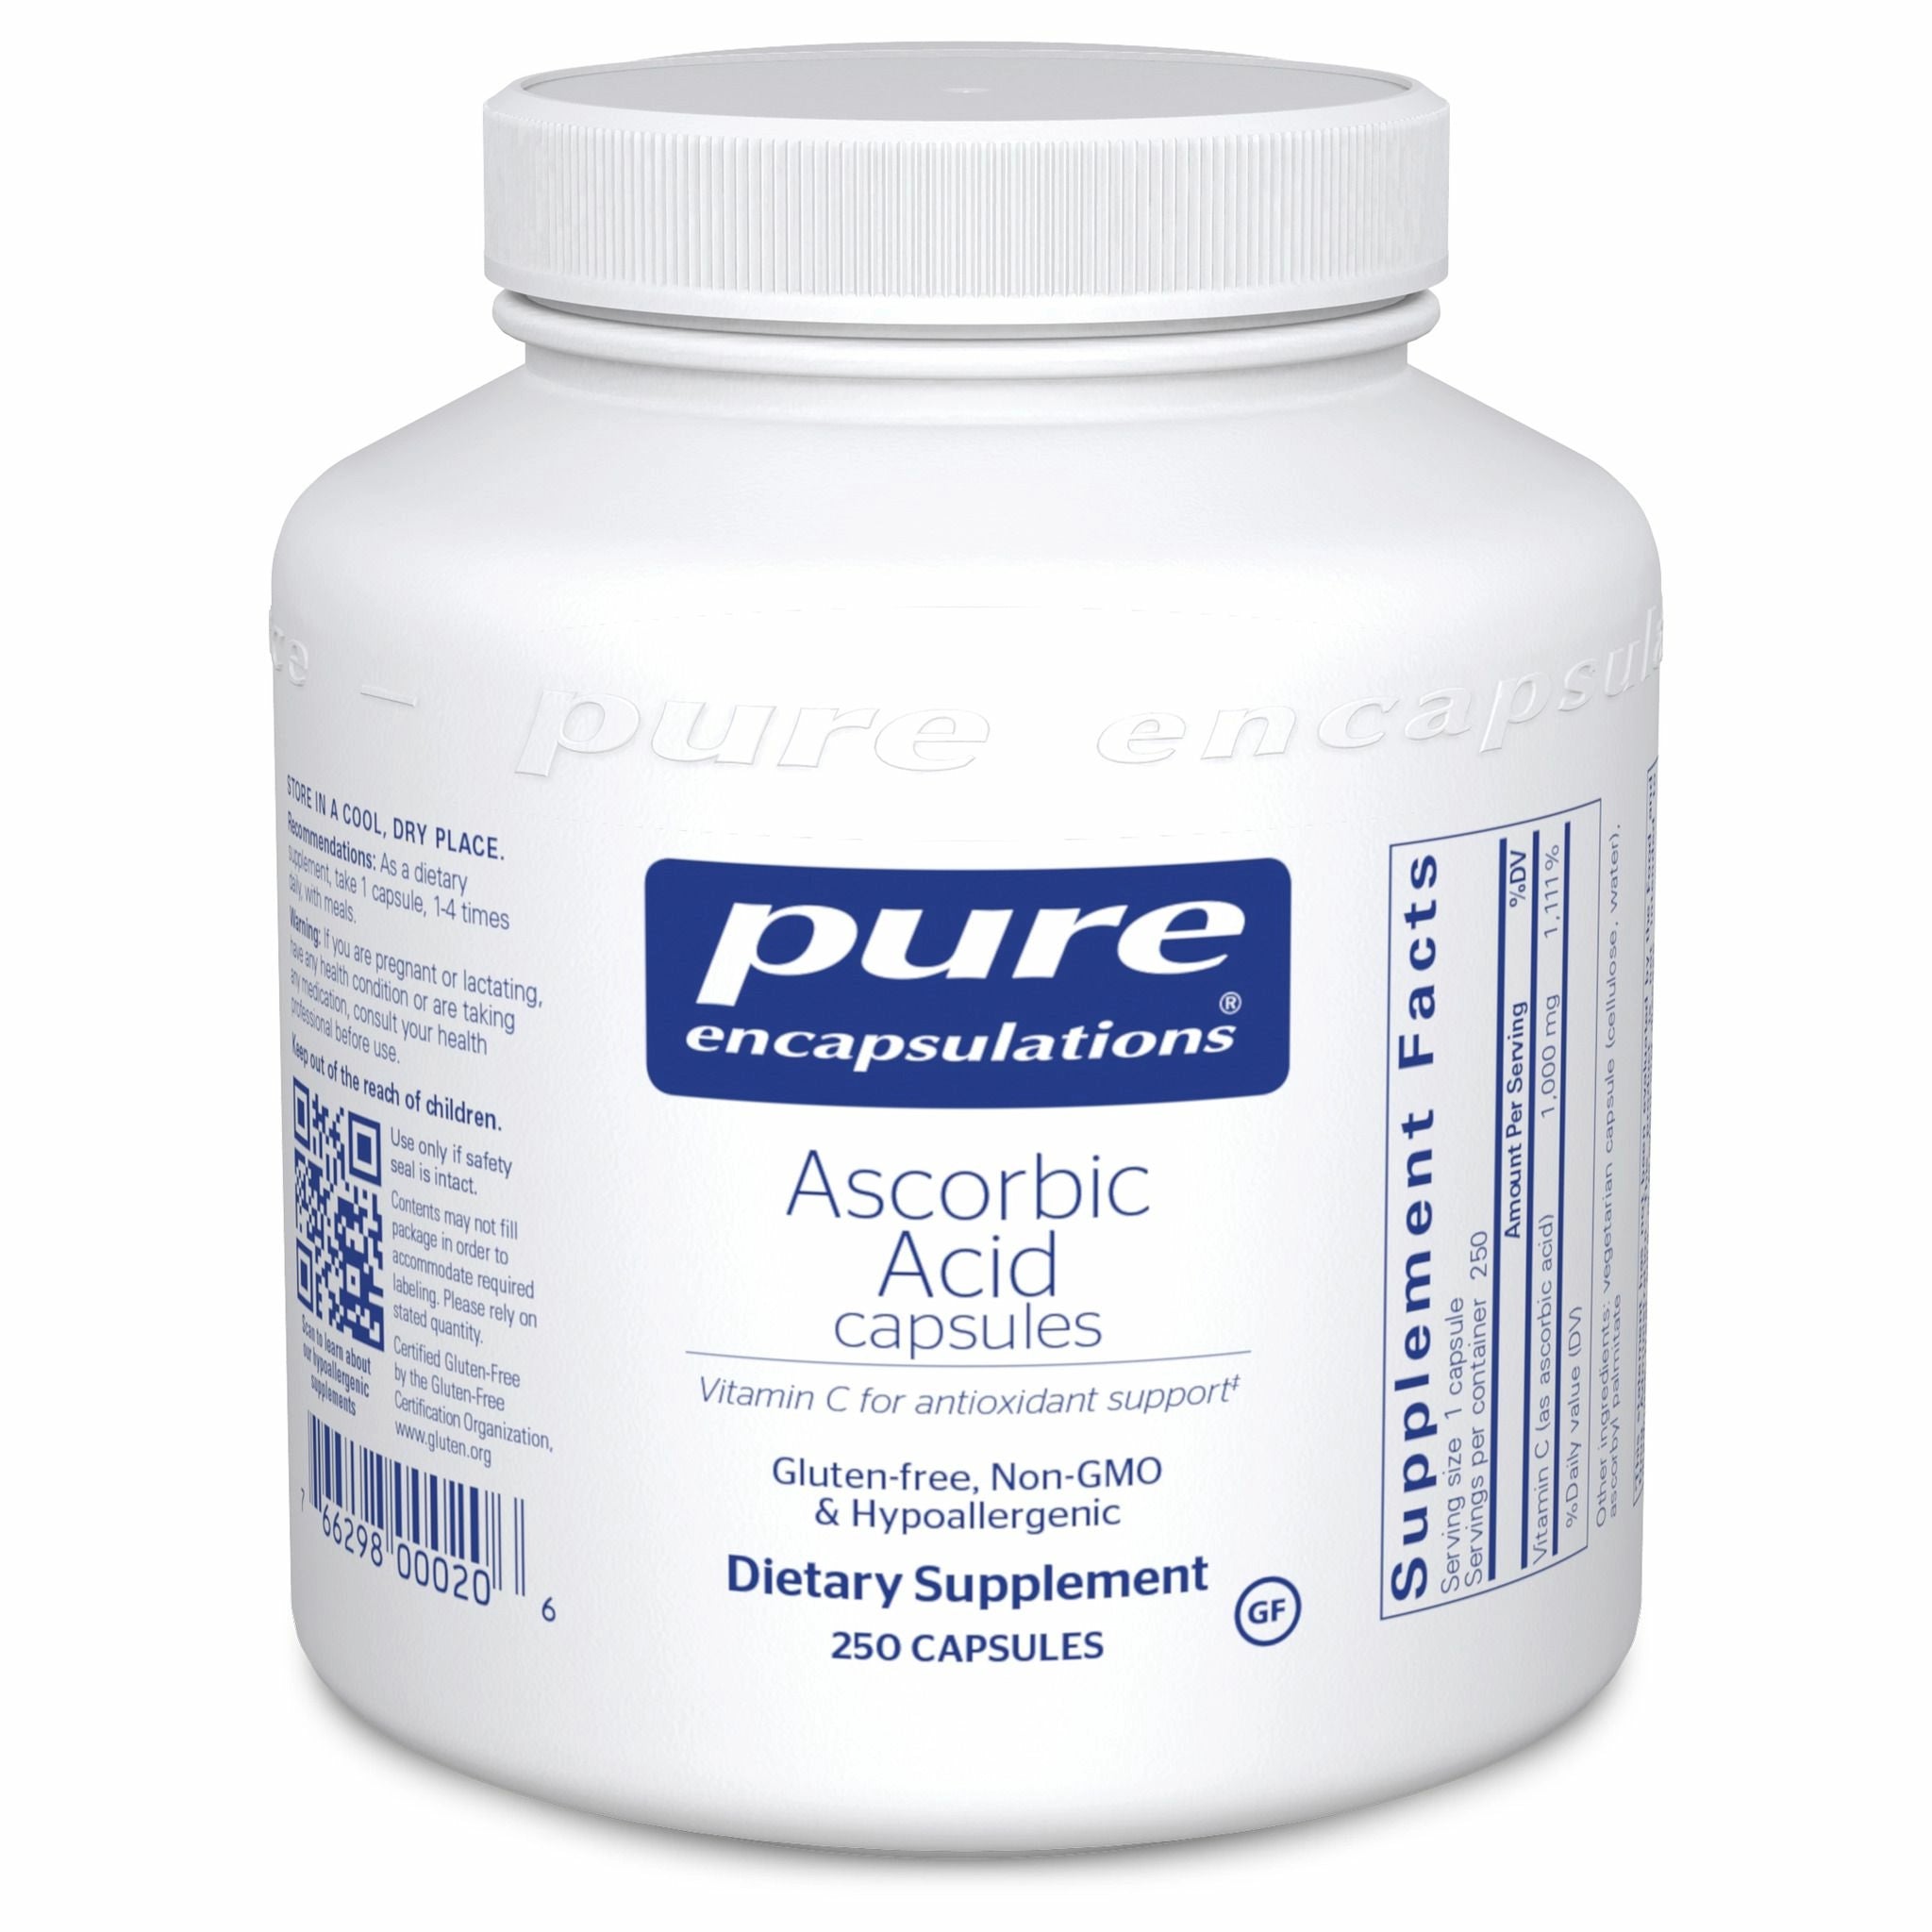 Pure Ascorbic Acid Capsules